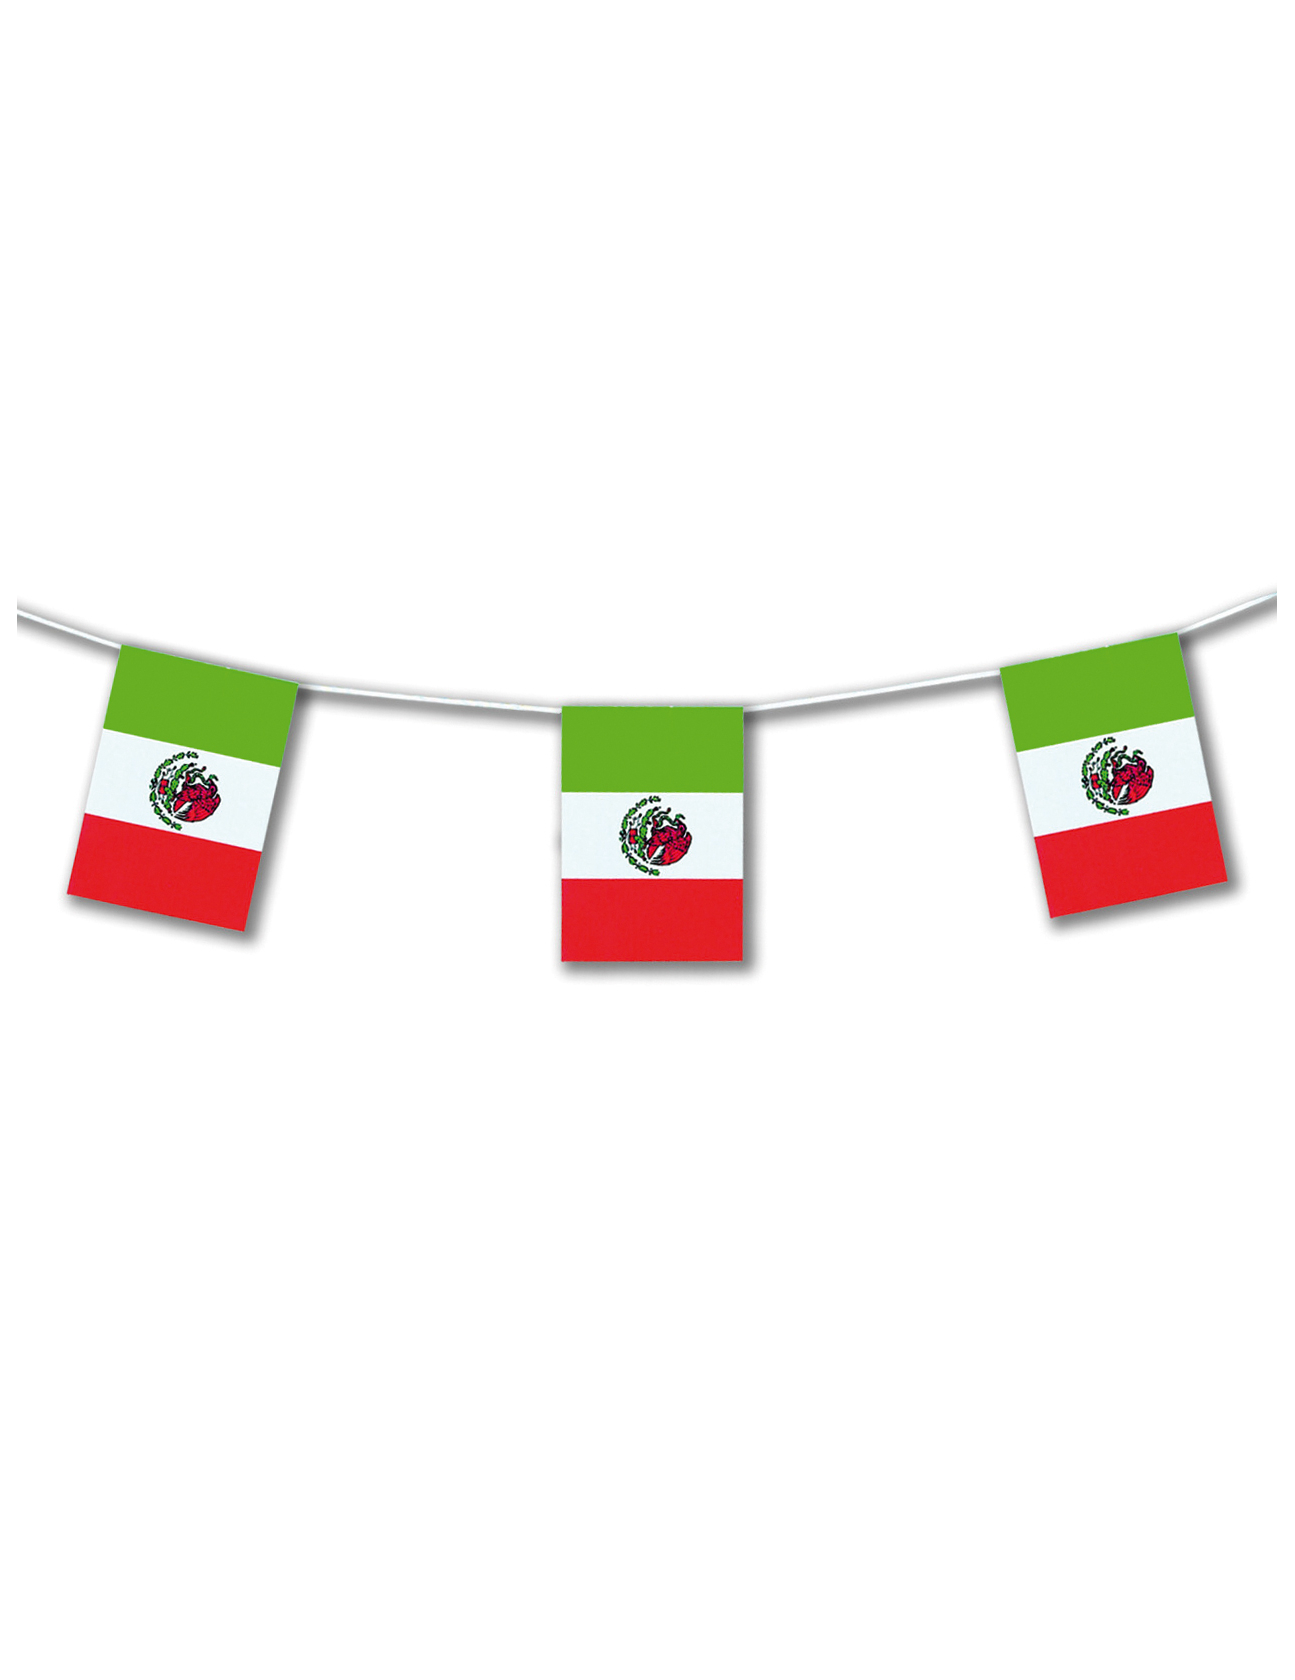 Mexiko-Girlande Partydeko grün-rot 5m von CHRISTIANFABRICATIONS